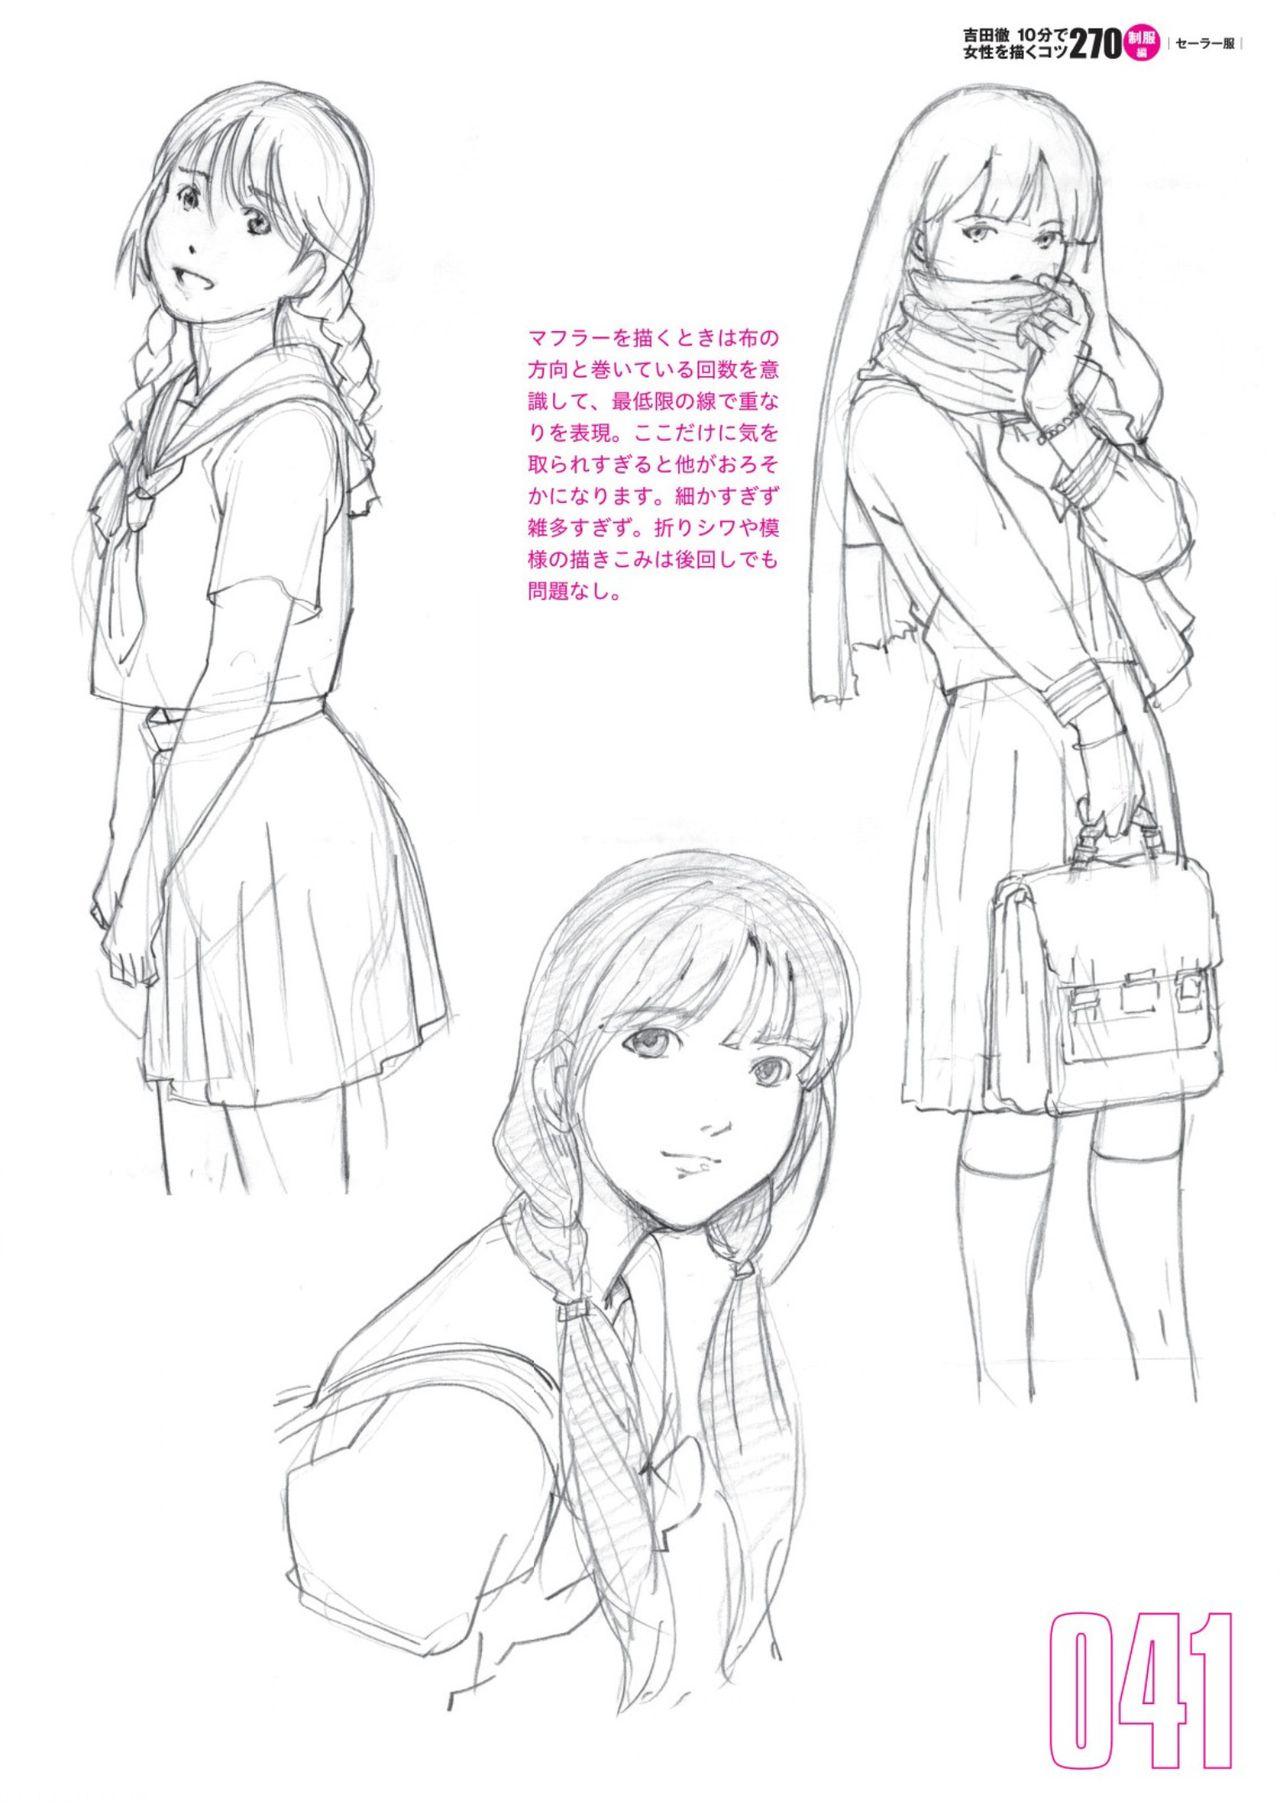 Toru Yoshida Tips for drawing women in 10 minutes 270 Uniforms 42